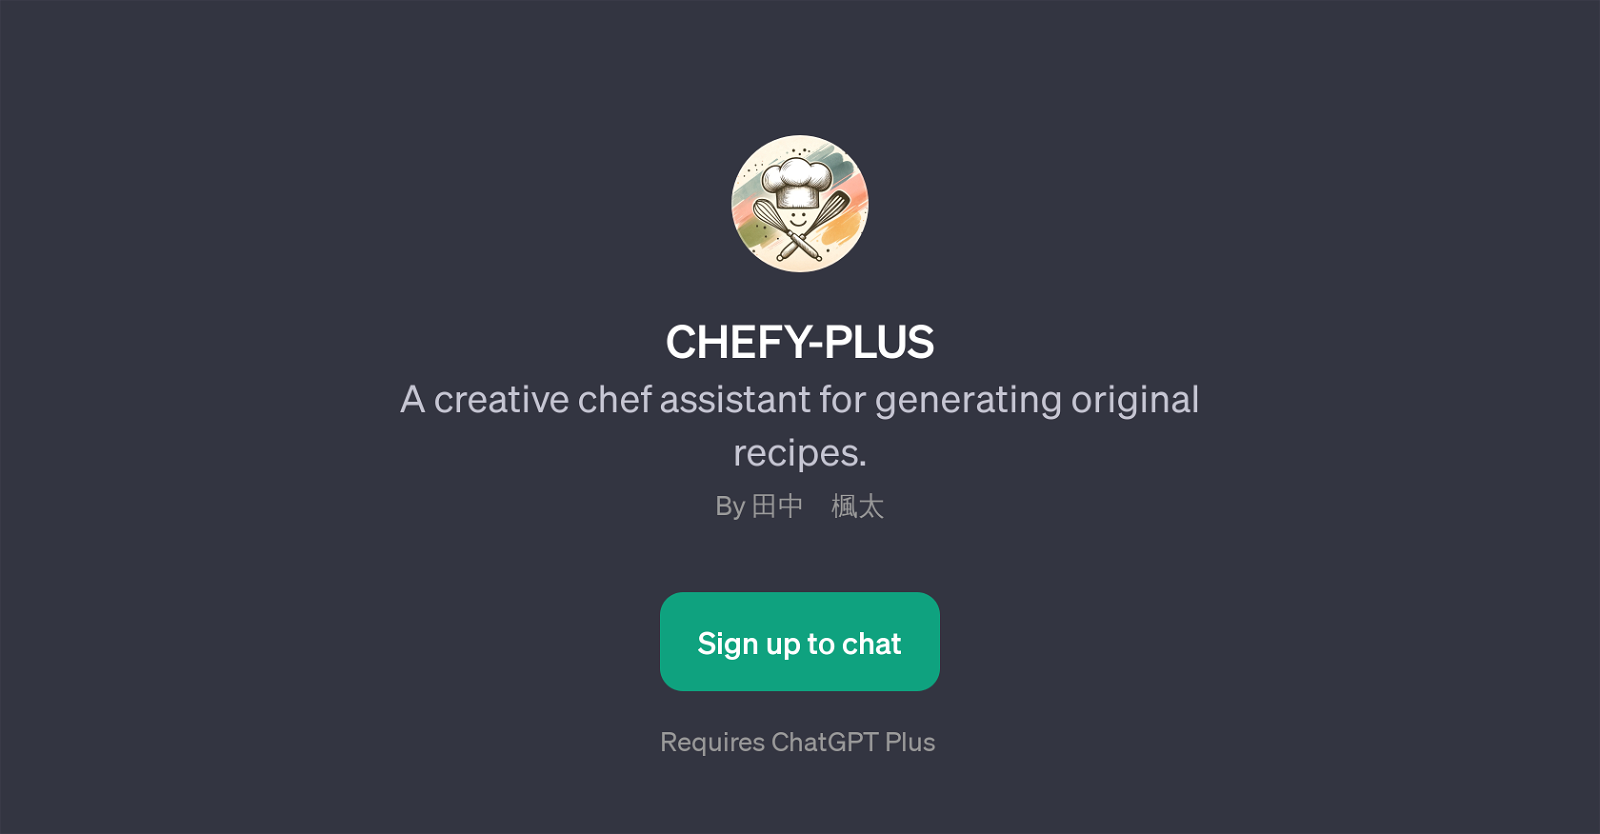 CHEFY-PLUS website